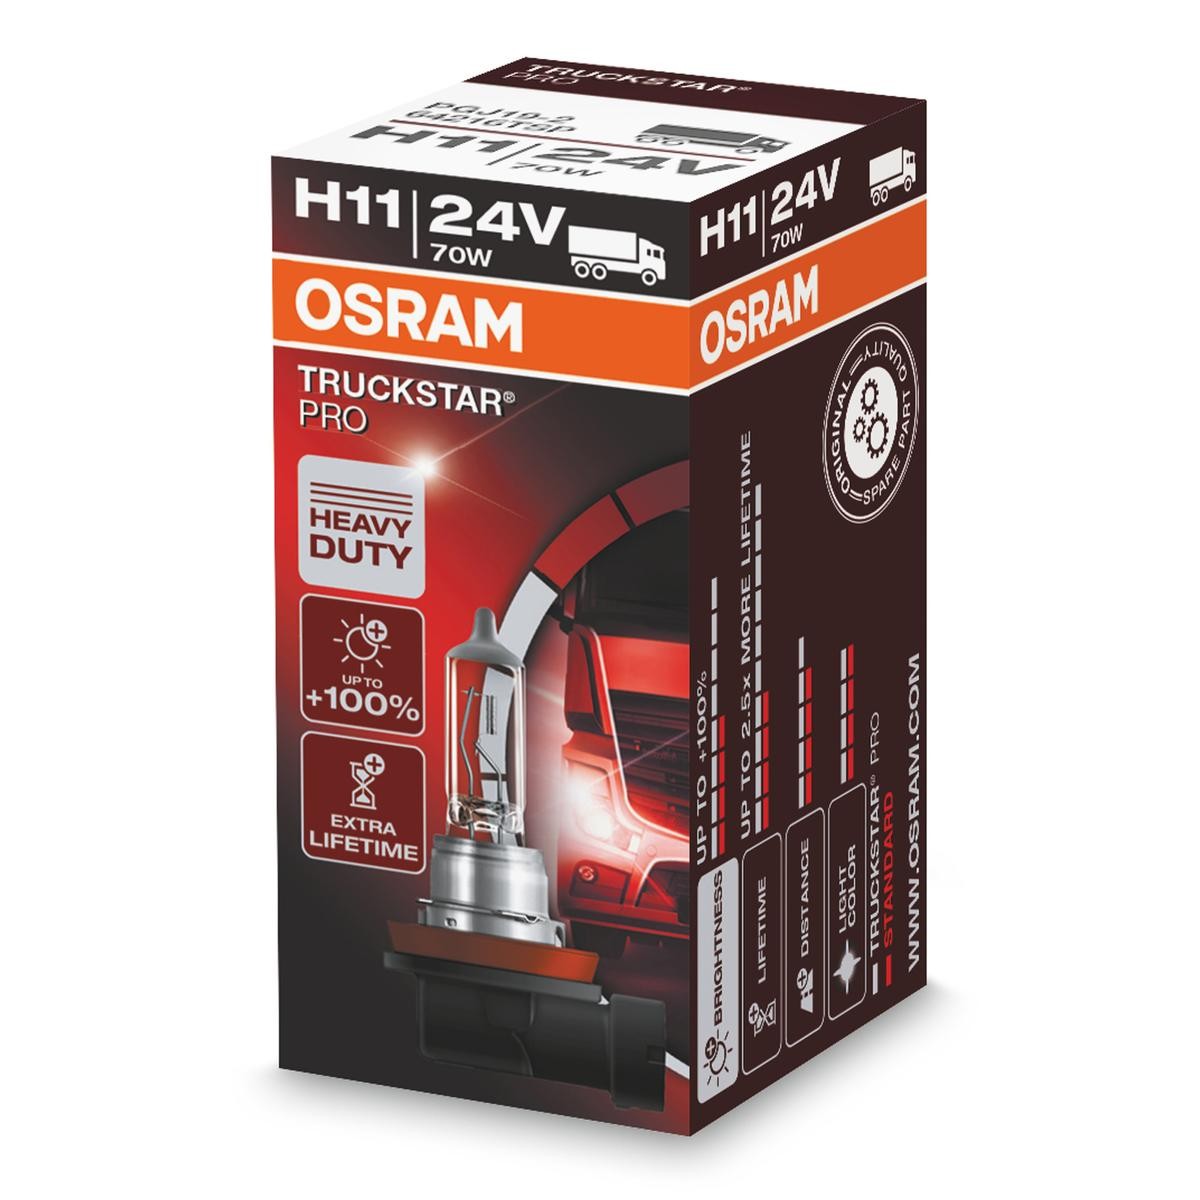 H11 OSRAM TRUCKSTAR PRO H11 24V 70W PGJ19-2, 3200K, Halogen High beam bulb 64216TSP buy